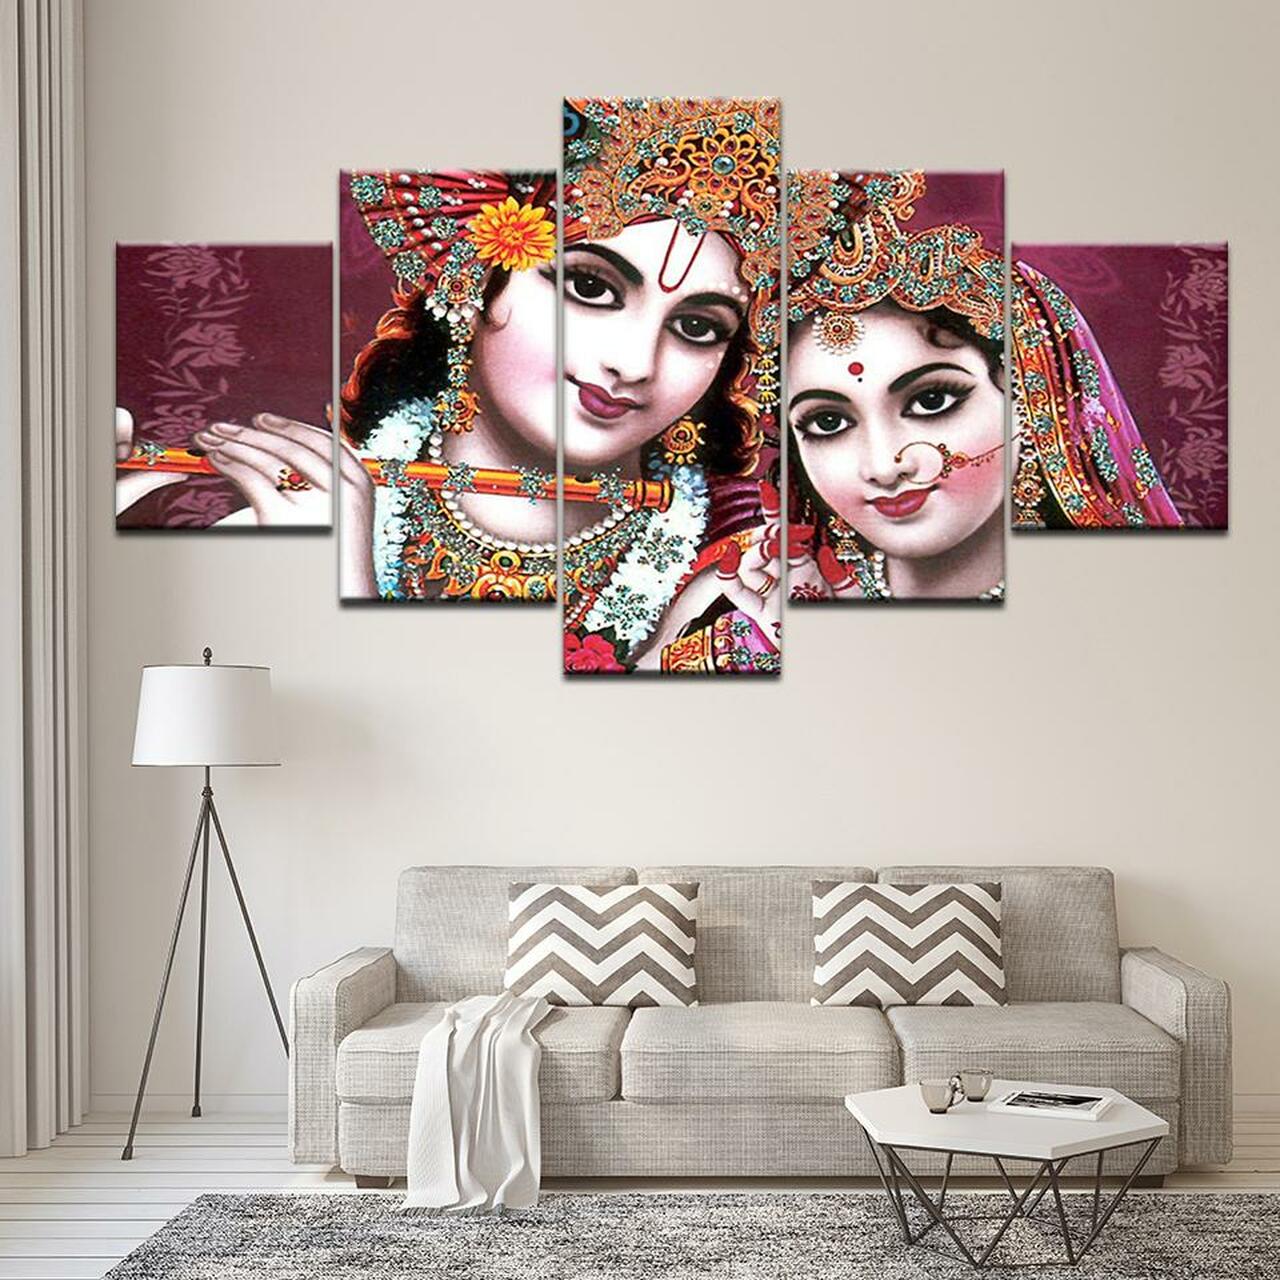 krishna radhe 5 pices peinture sur toile impression sur toile toile art pour la dcoration intrieureendwg